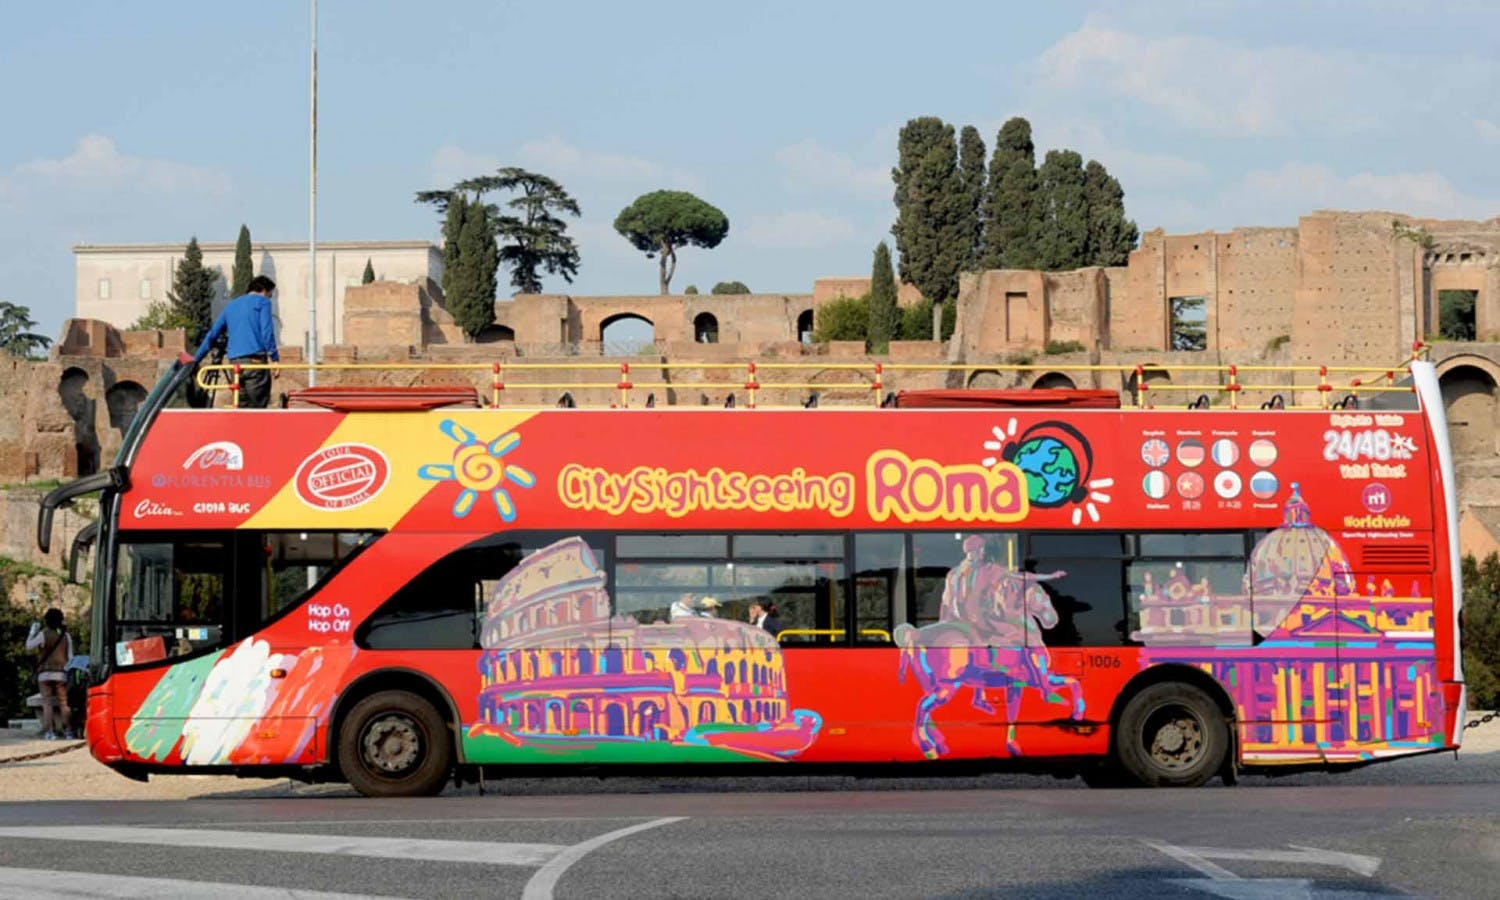 Sicily Excursion :: Agenzia Viaggia Catania Palermo